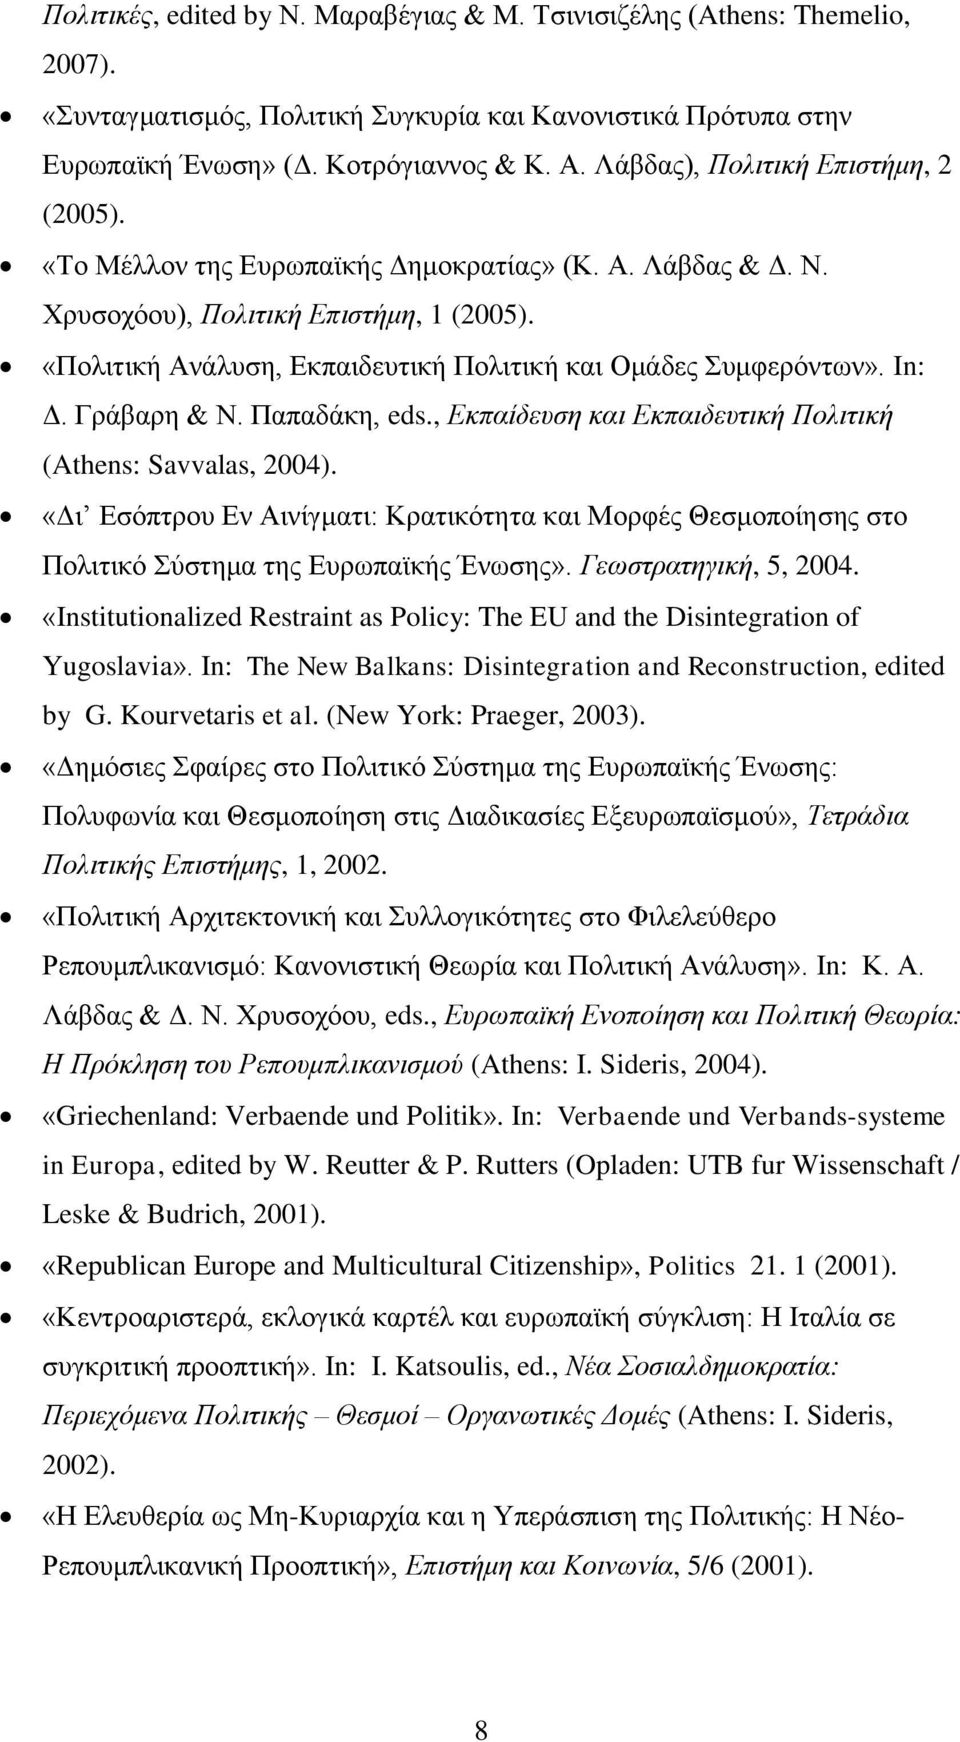 «Πολιτική Ανάλυση, Εκπαιδευτική Πολιτική και Ομάδες Συμφερόντων». In: Δ. Γράβαρη & Ν. Παπαδάκη, eds., Εκπαίδευση και Εκπαιδευτική Πολιτική (Athens: Savvalas, 2004).